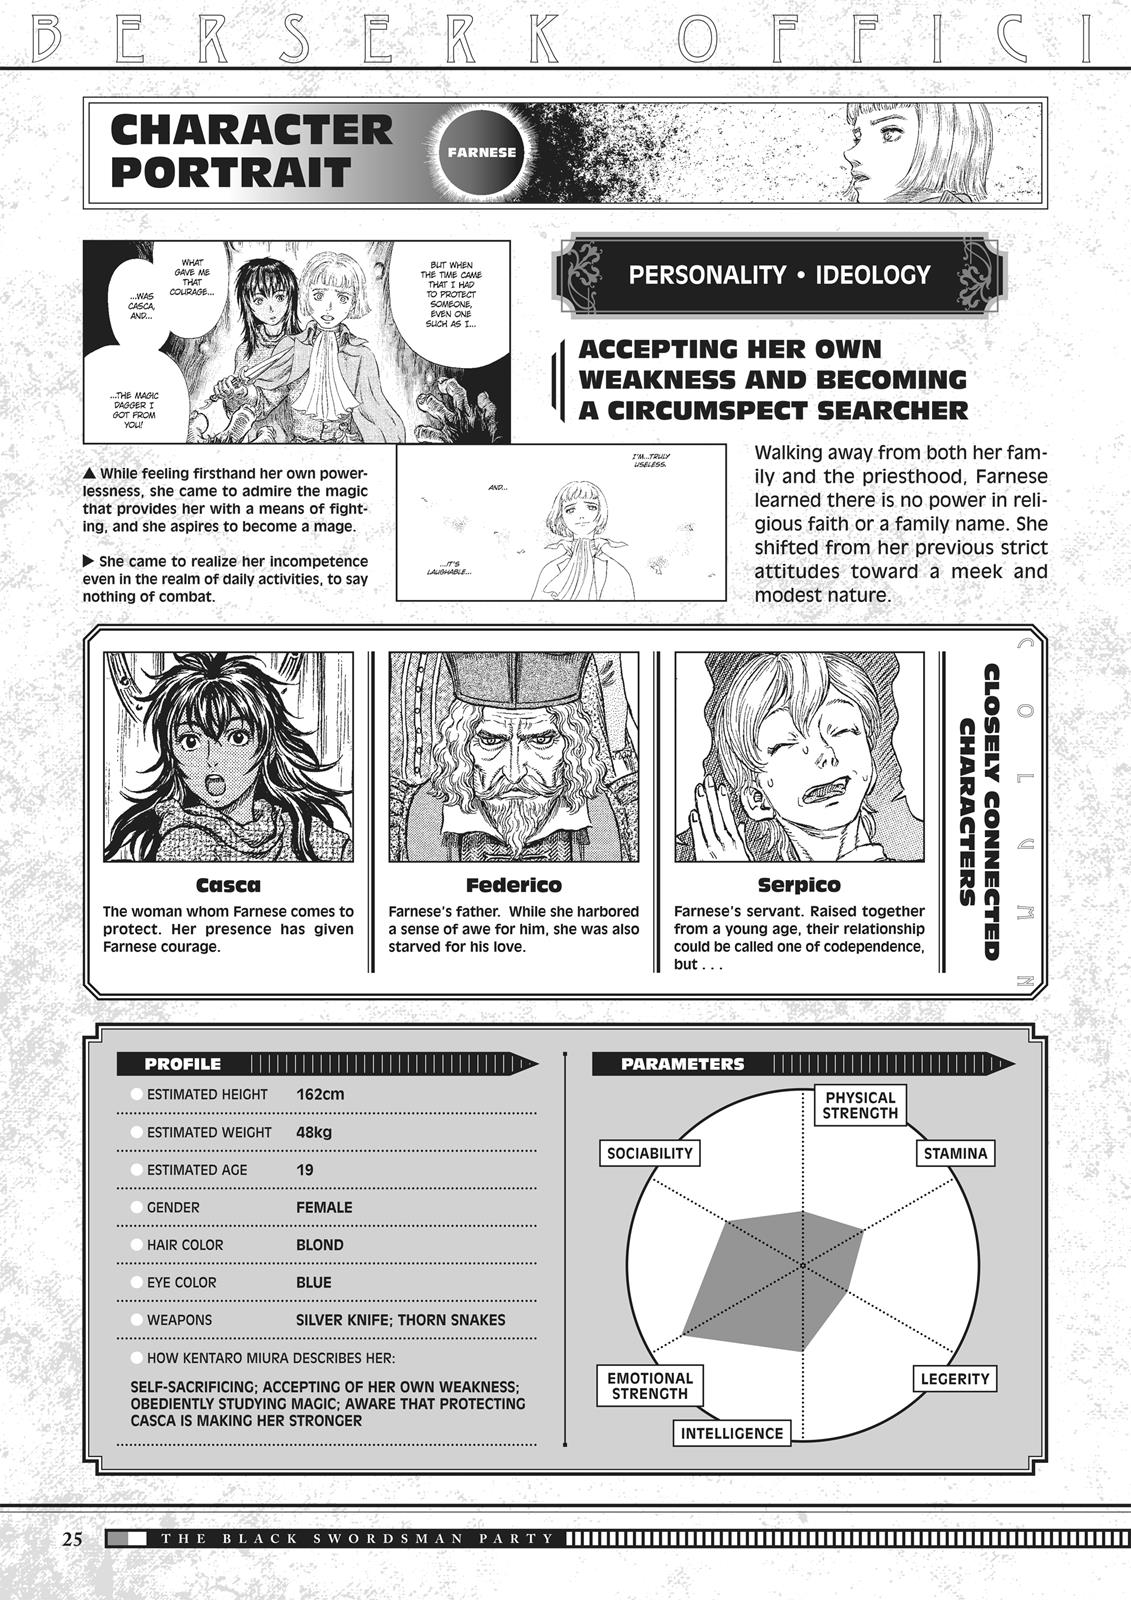 Berserk Manga Chapter 350.5 image 026